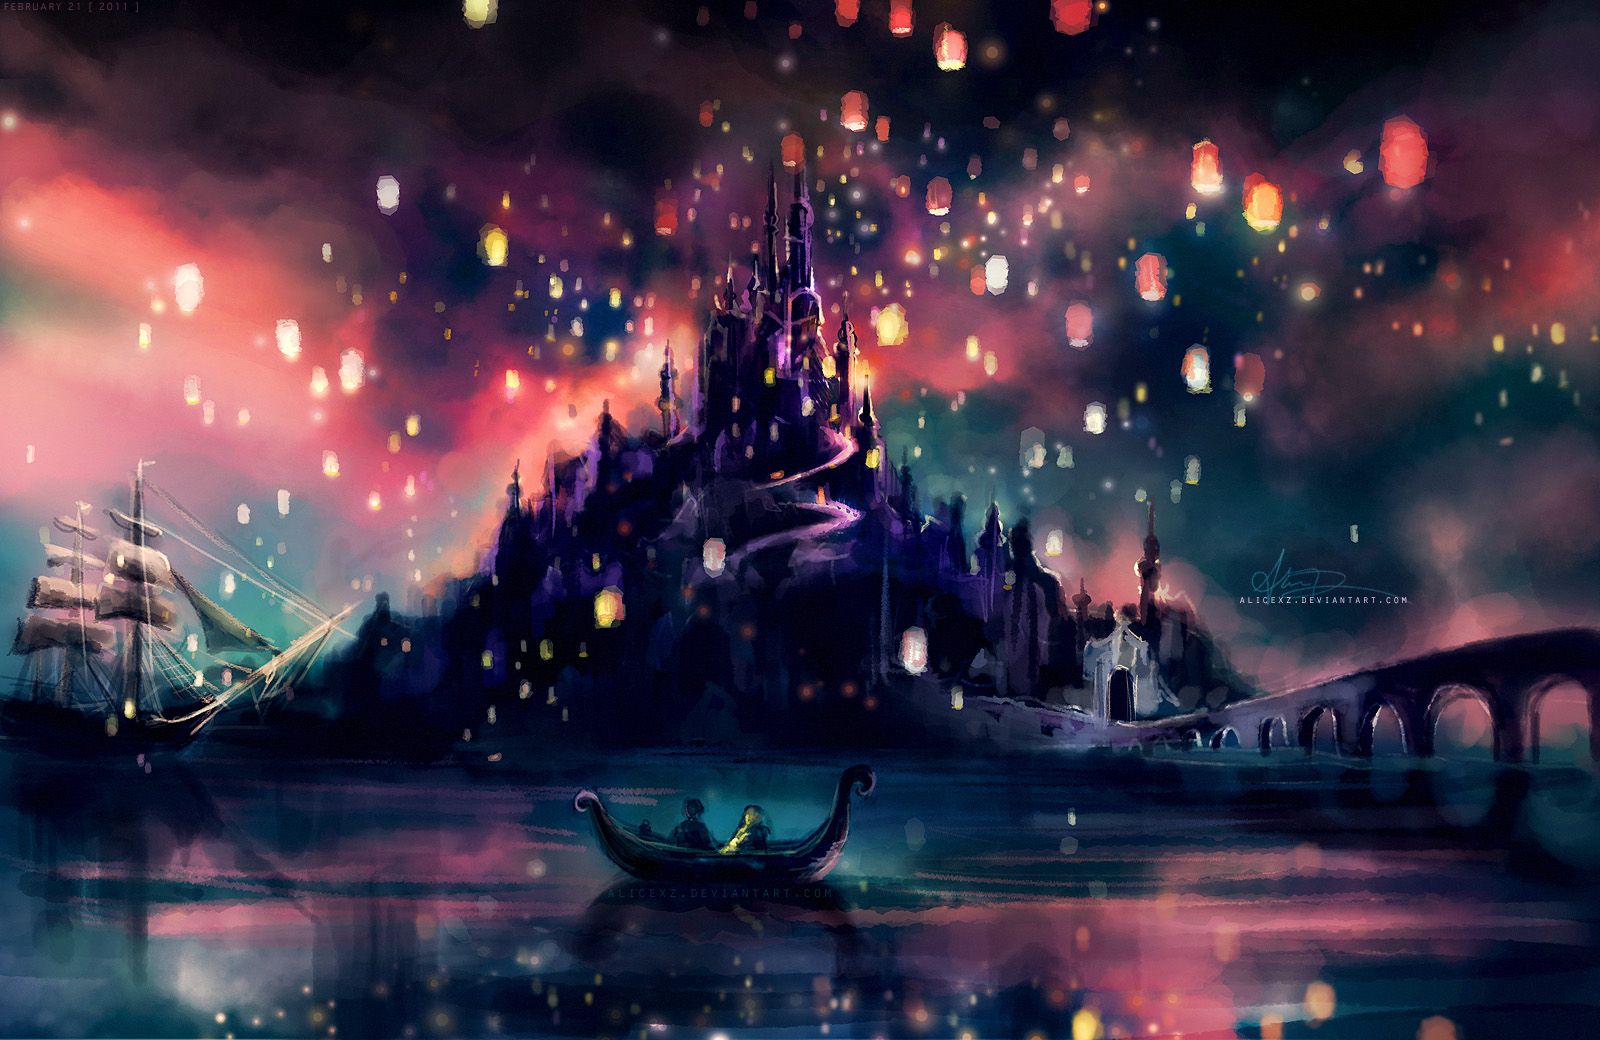 Alicexz's Disney Wallpaper